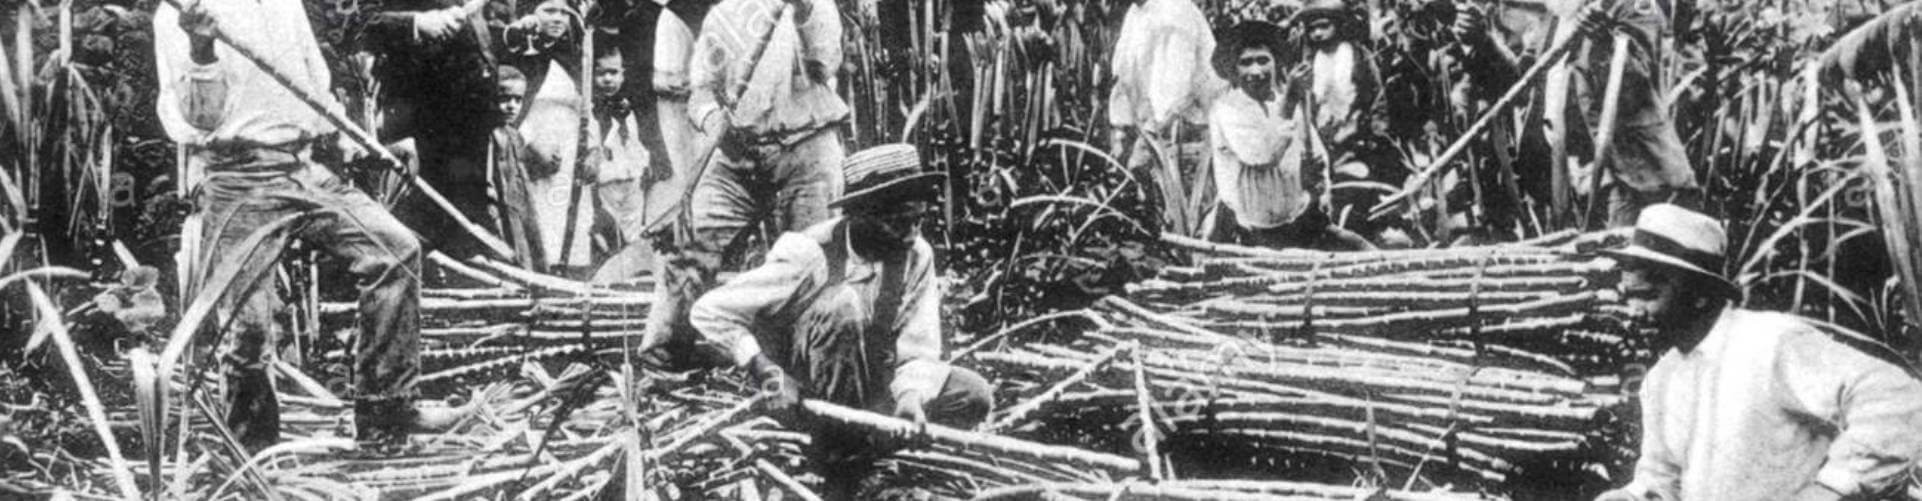 Madeira Sugar Cane History